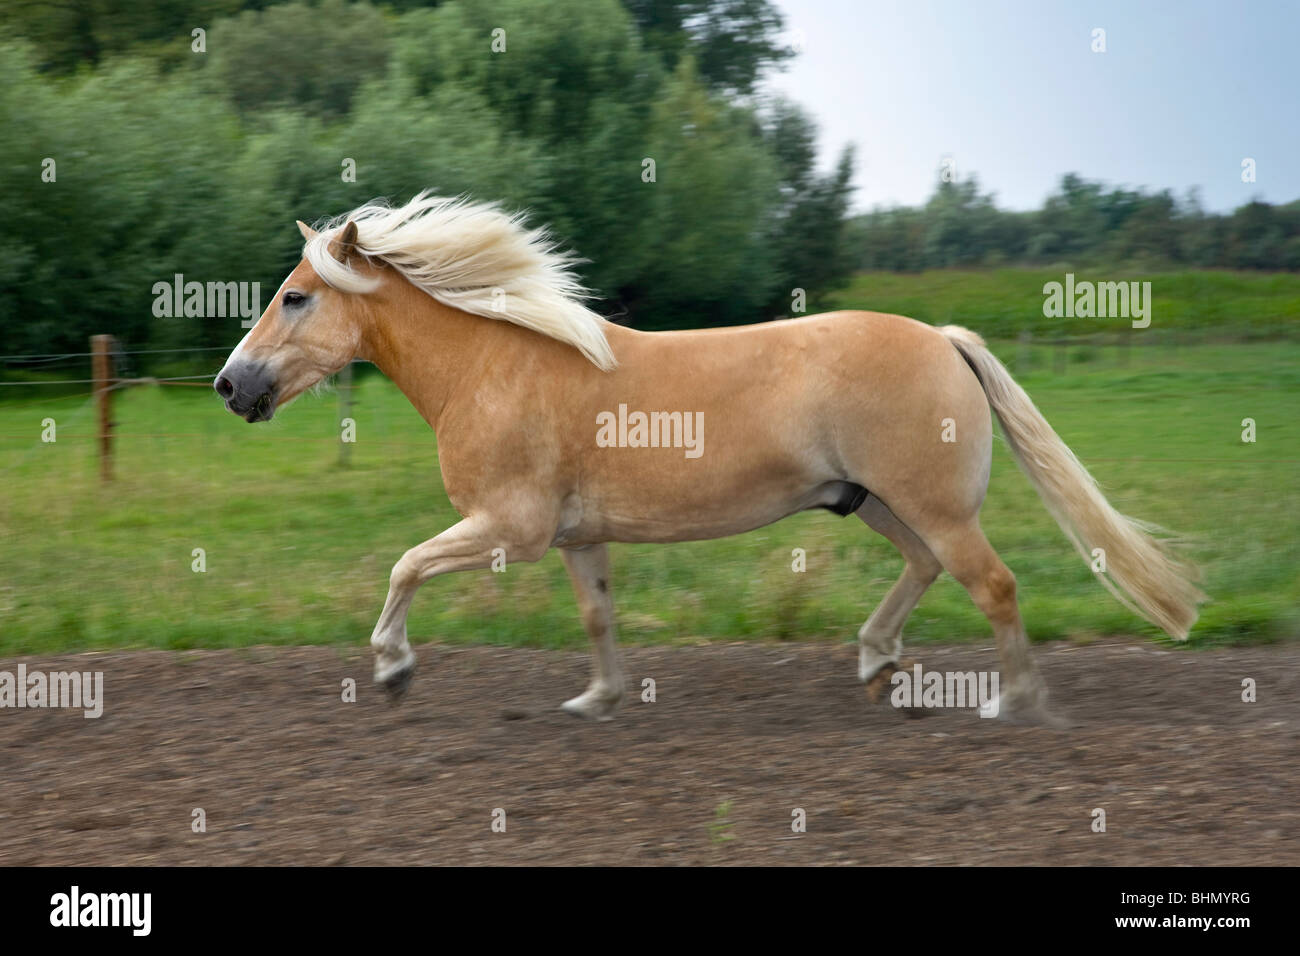 Haflinger / Avelignese horse (Equus caballus) in field, Belgium Stock Photo